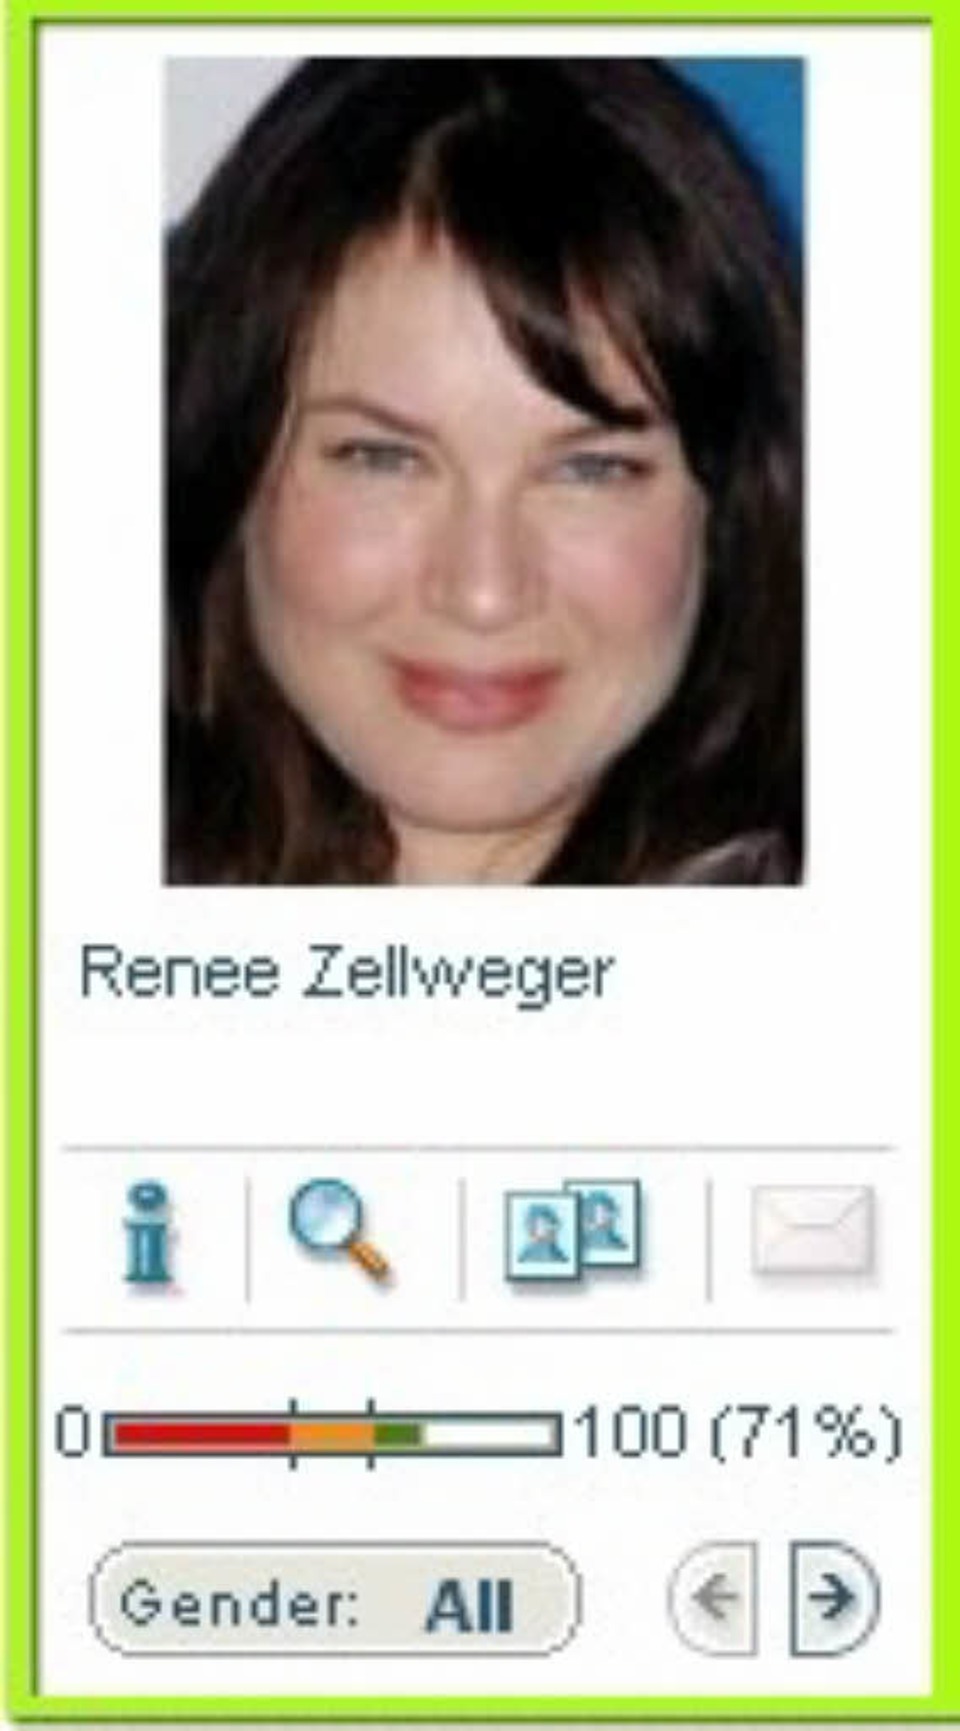 <b>Dana Penno</b> sieht der amerikanischen Schauspielerin Renée Zellweger ähnlich. - 120954877-w-960